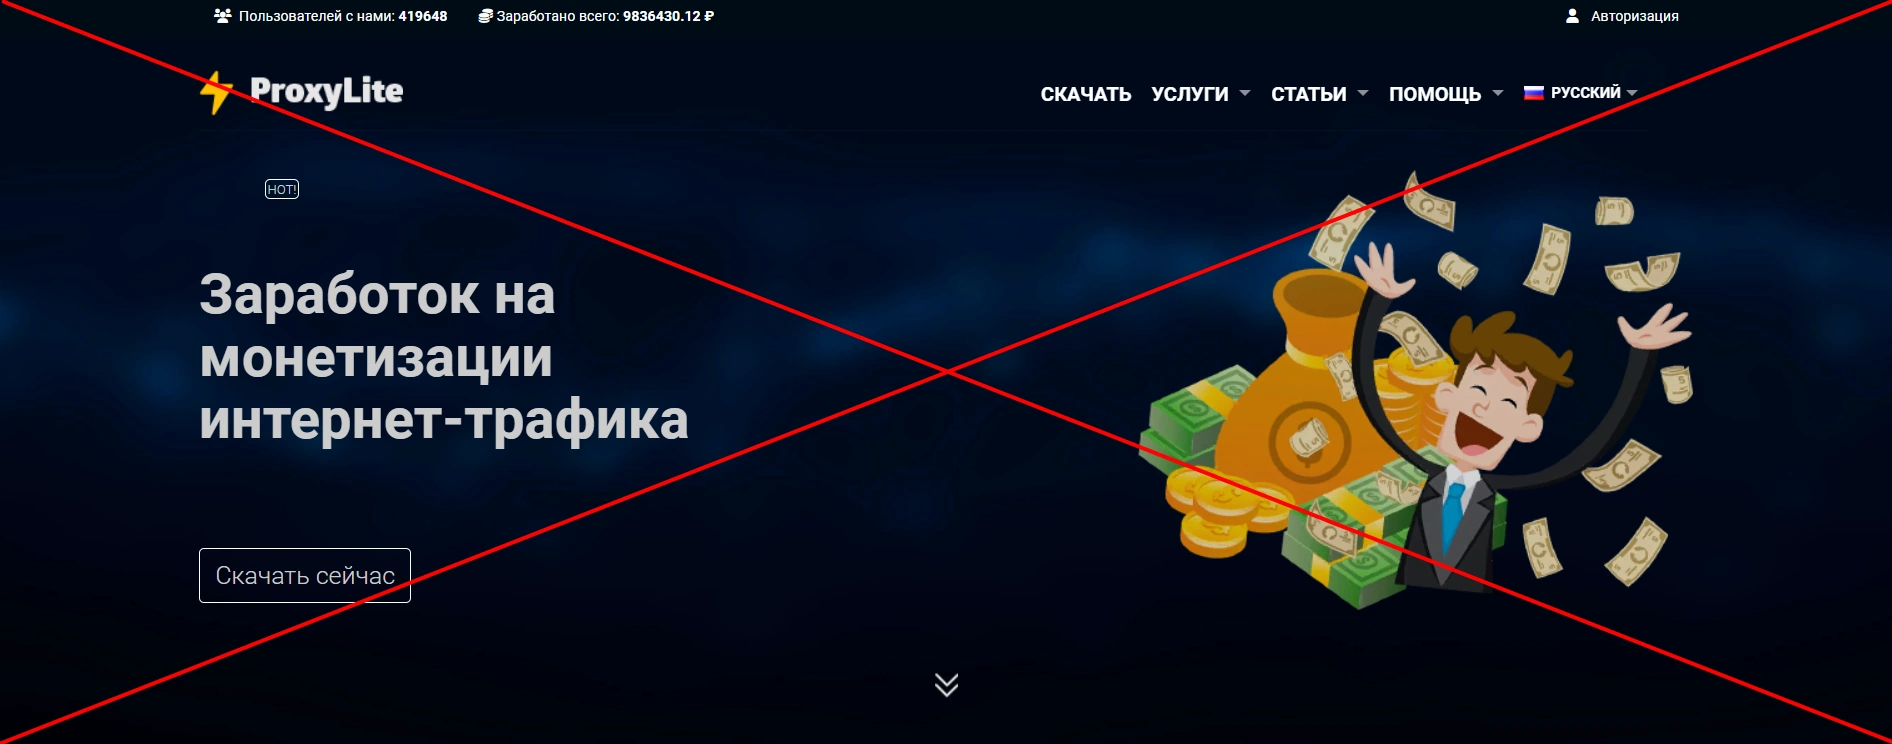 Работа в ProxyLite - отзывы о компании proxylite.ru